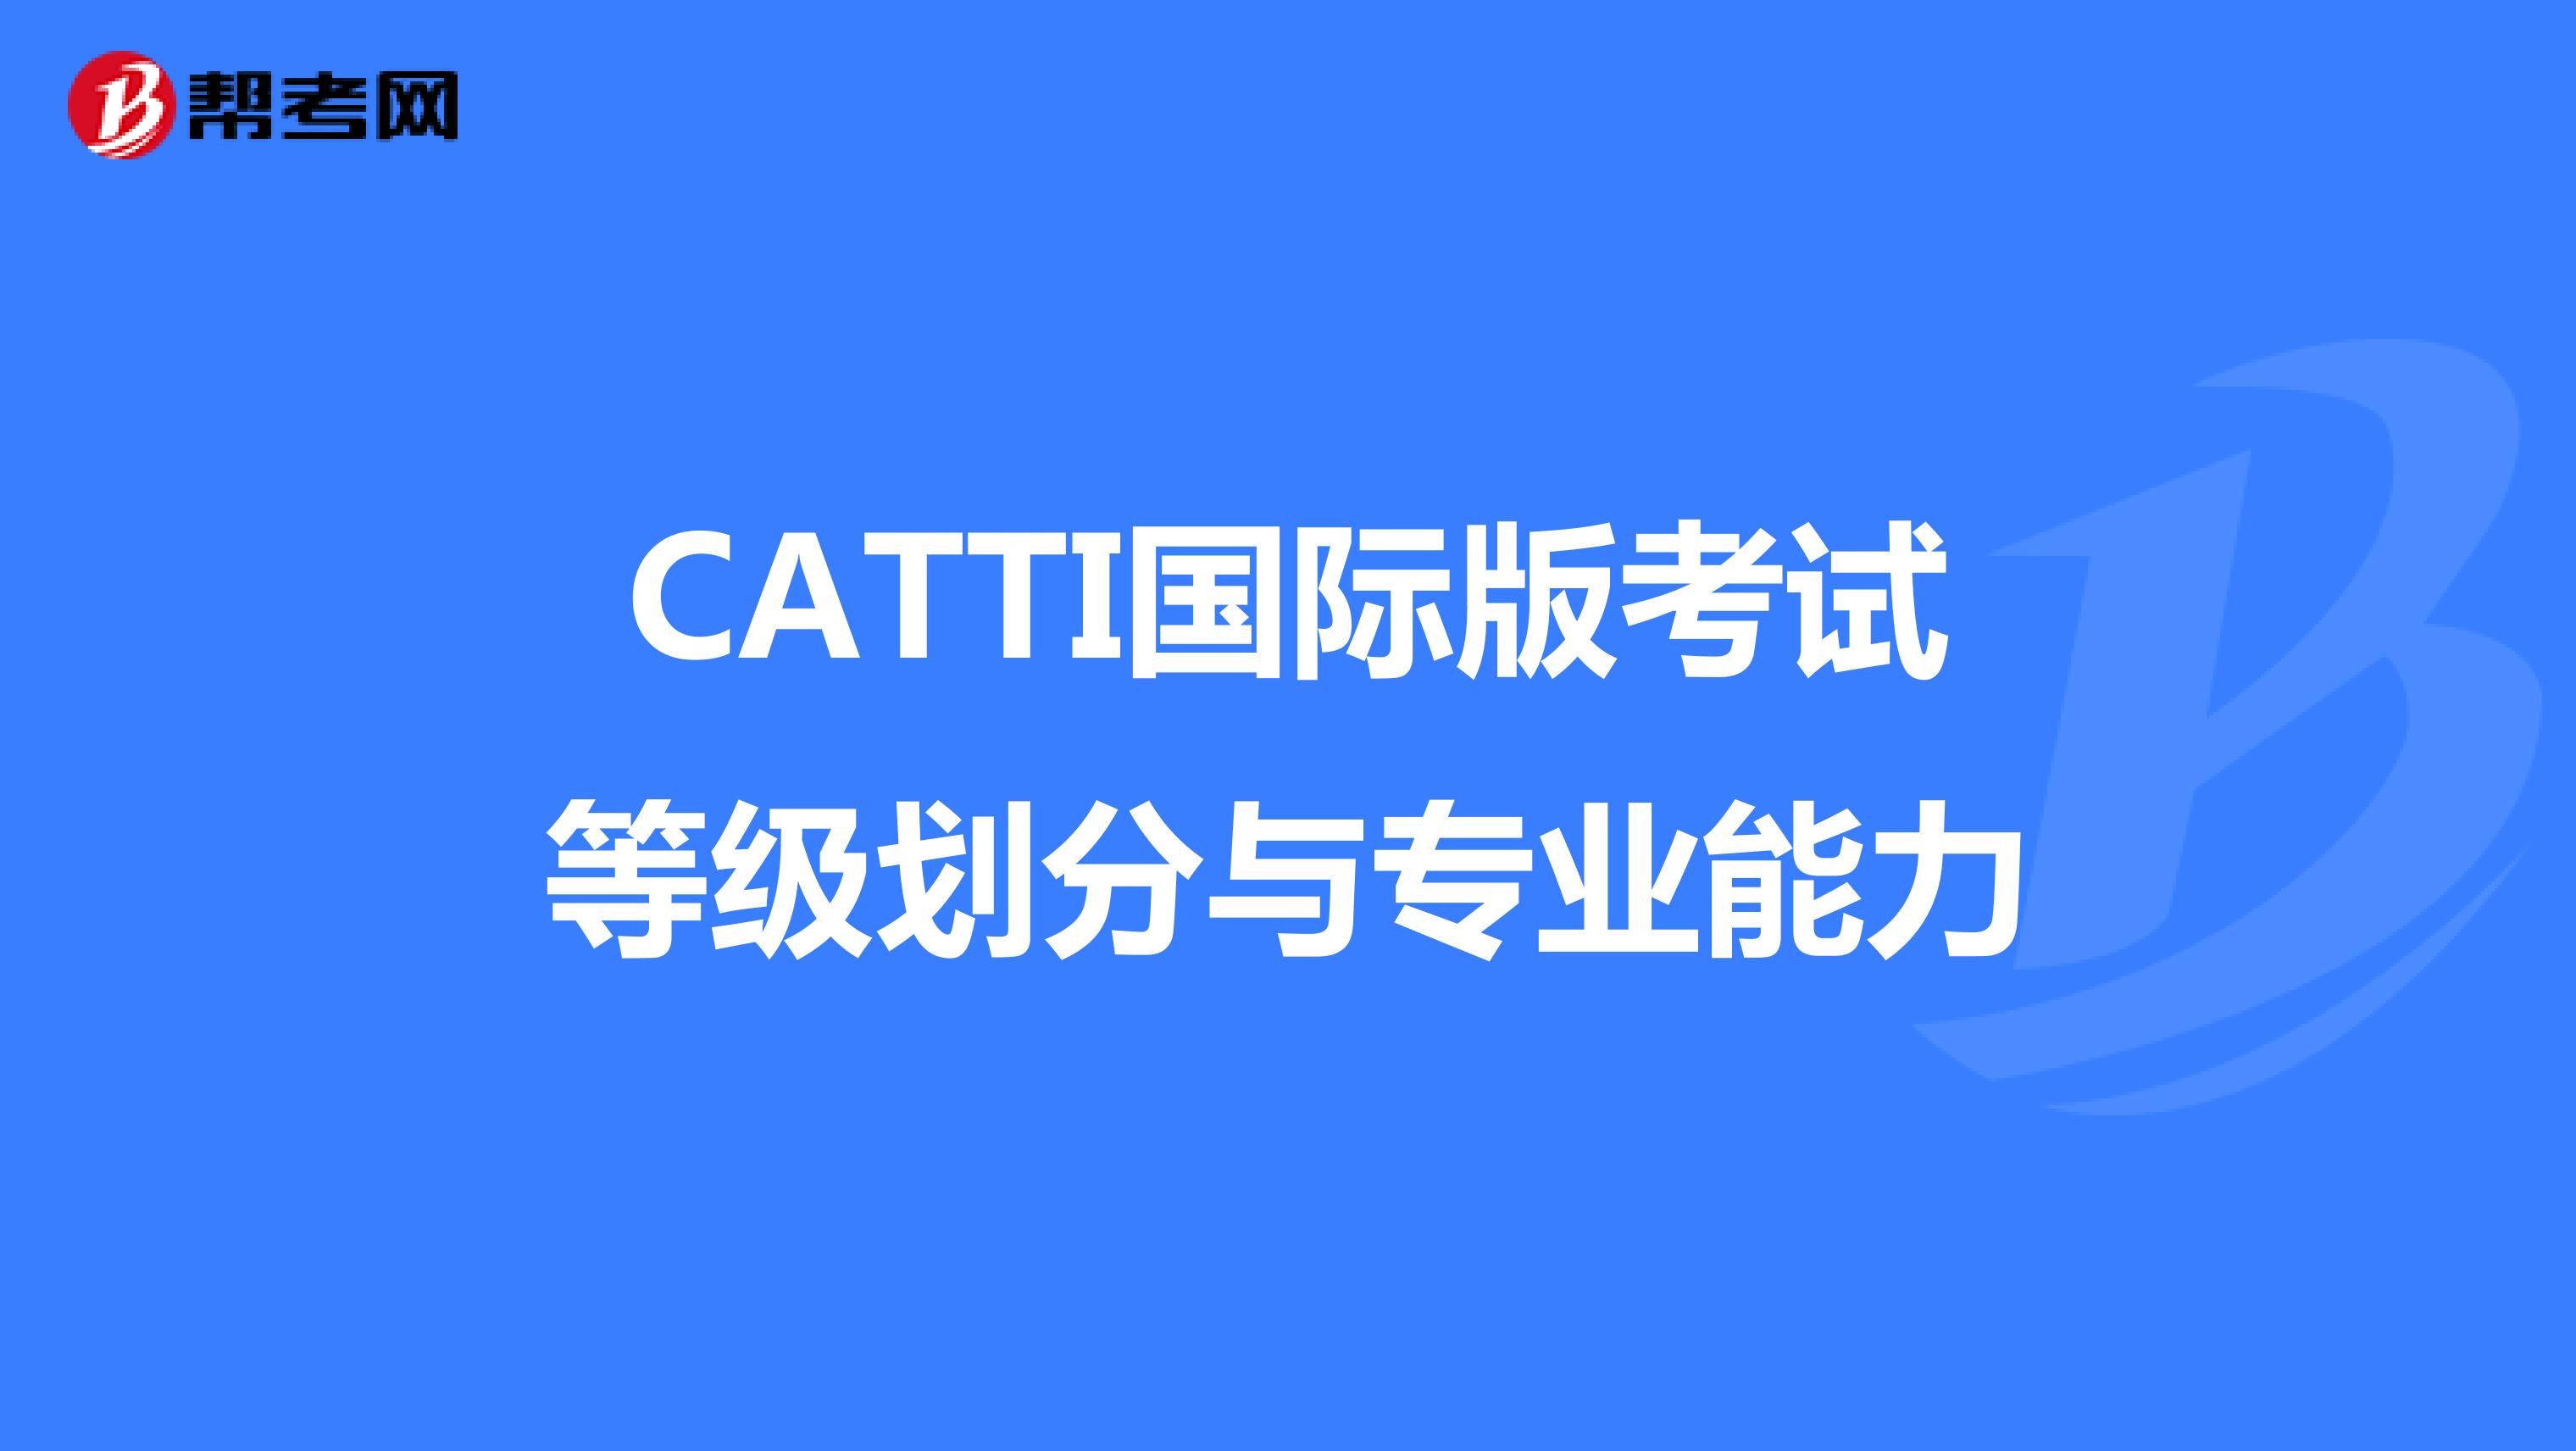 CATTI国际版考试等级划分与专业能力